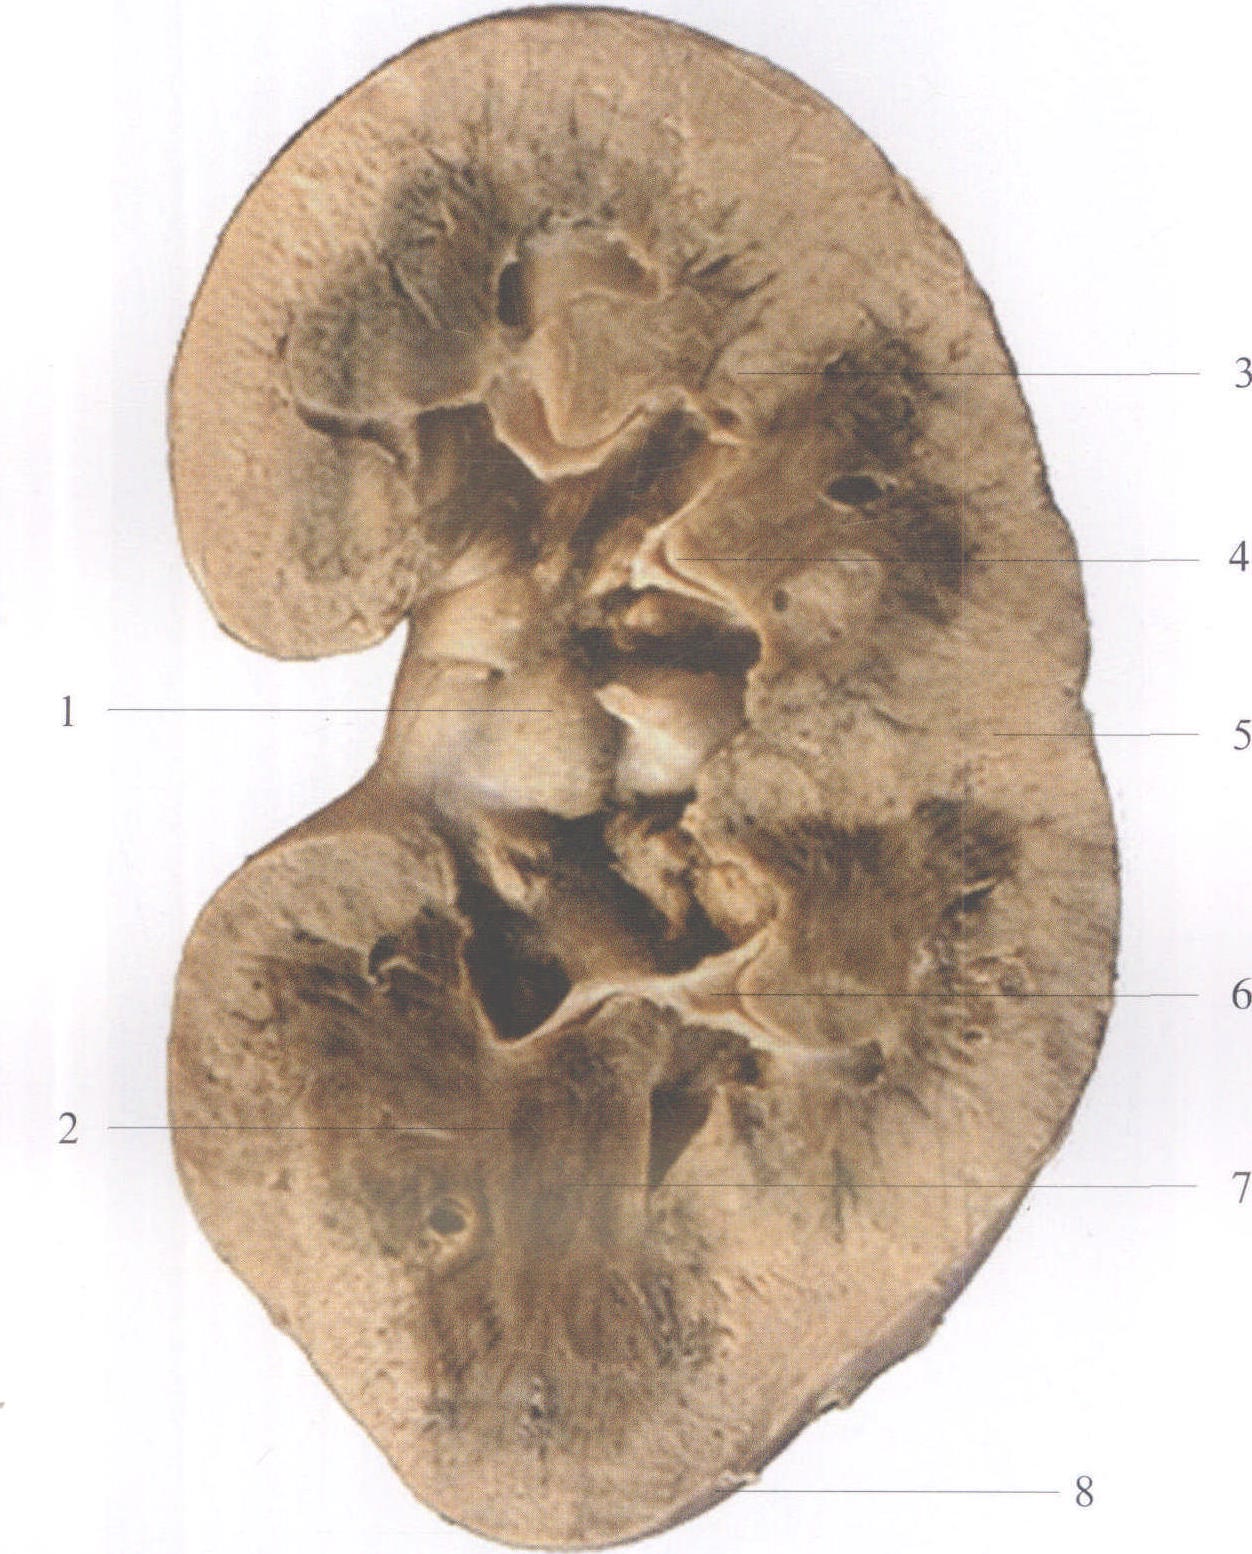 肾的冠状切面图图片